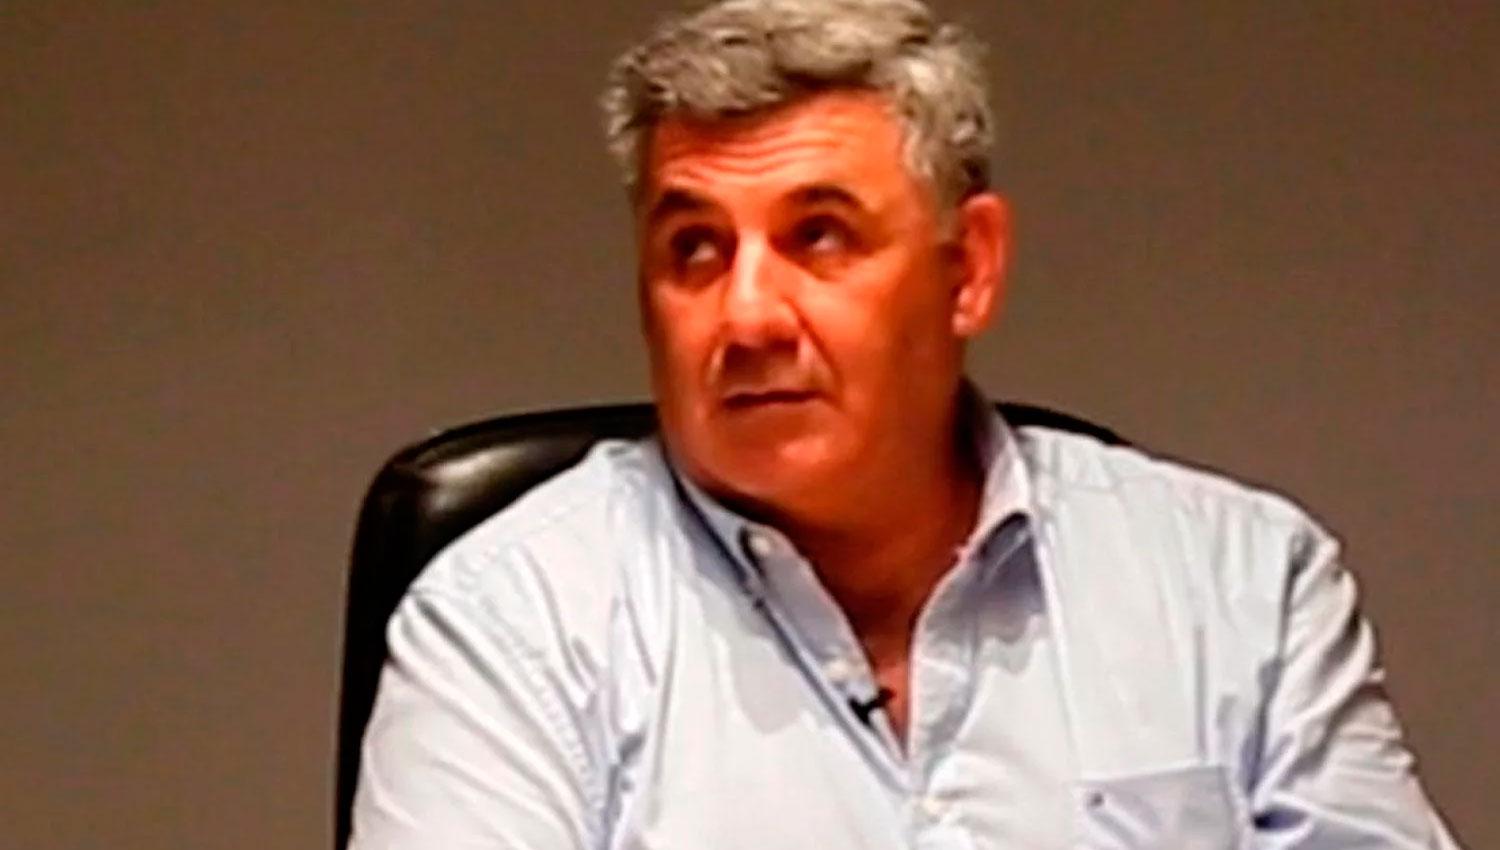 RENUNCIA. Tulio Caponio renunció a la banca en el Parlasur en 2018. Hoy es legislador provincial.